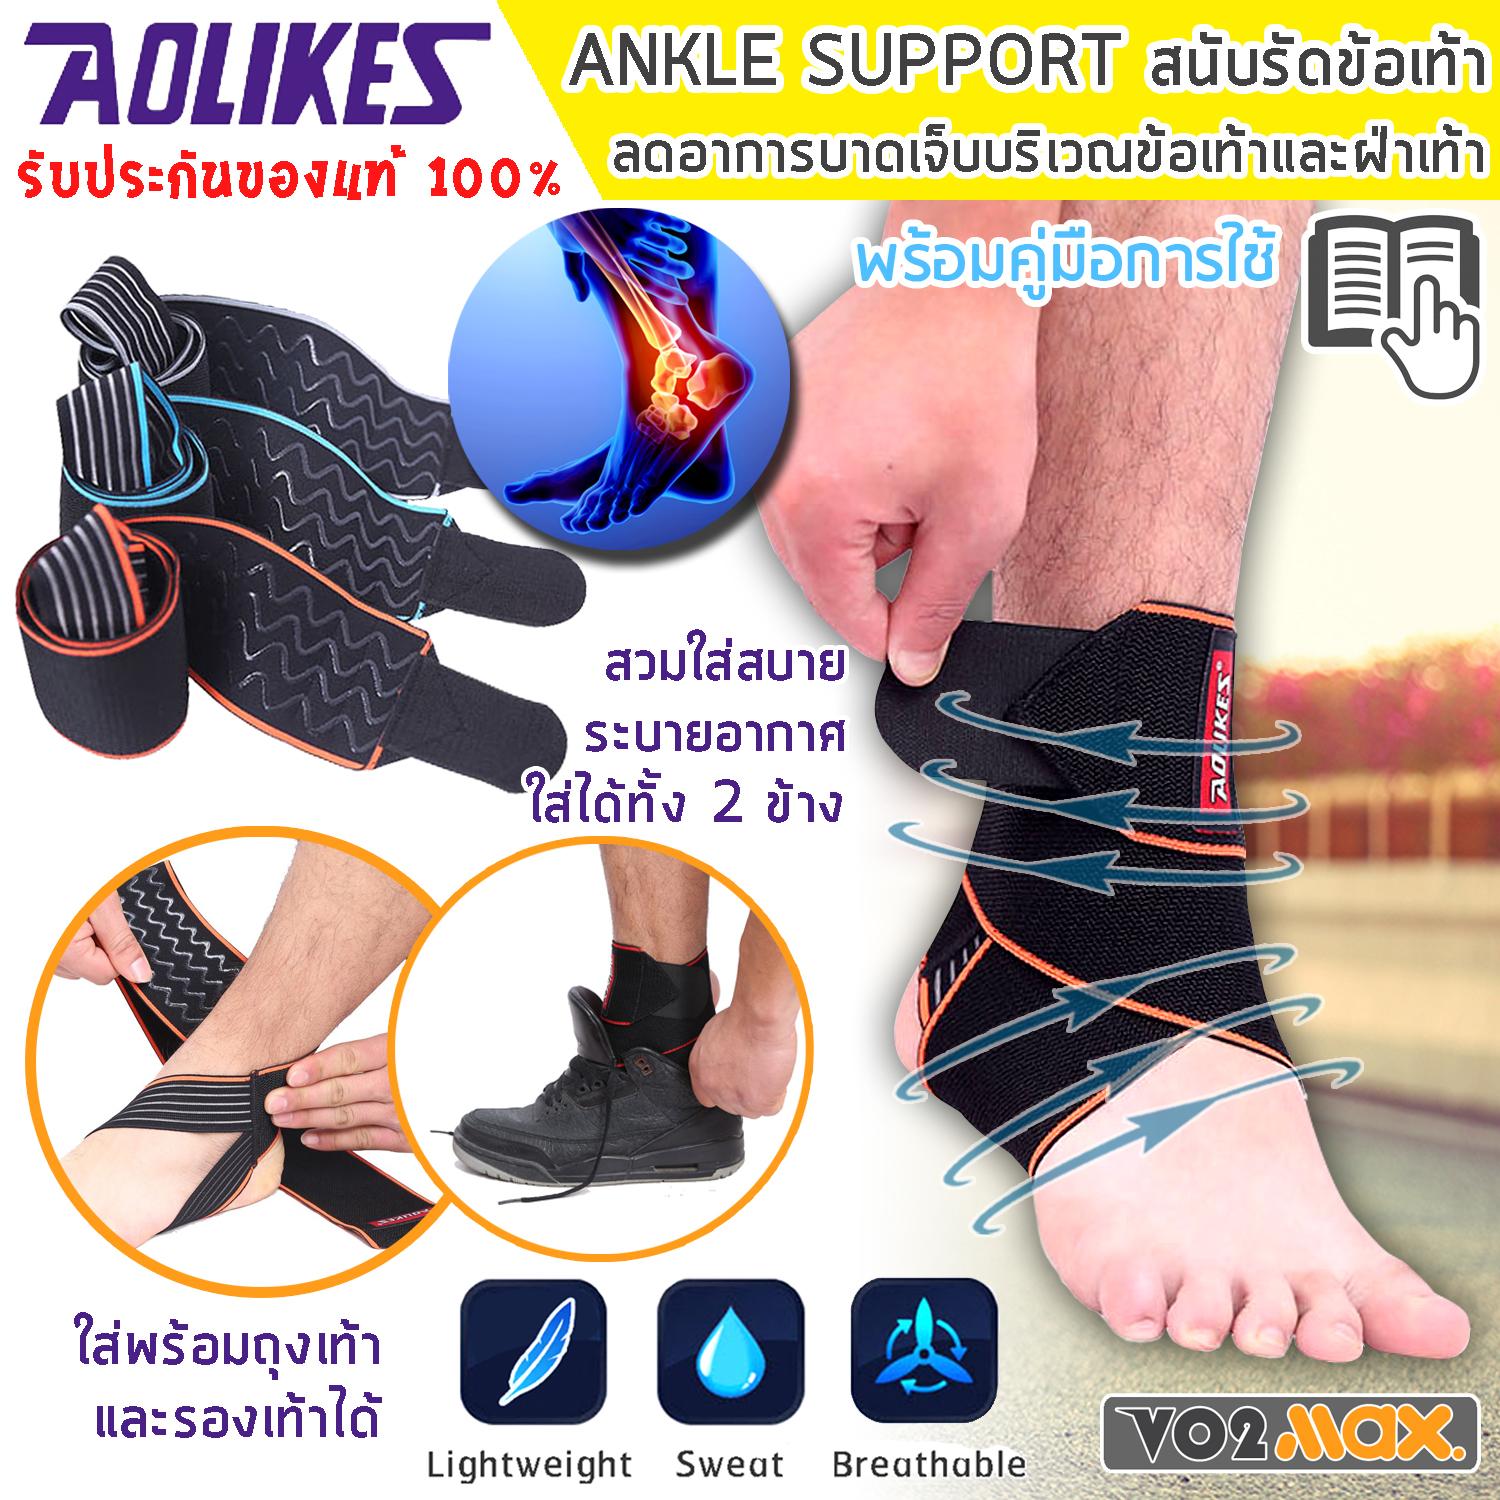 Aolikes ผ้ารัดข้อเท้า ผ้าพันข้อเท้า สายรัดข้อเท้า ที่รัดข้อเท้า ที่รัดเท้า  Ankle joint Support สำหรับนักวิ่ง เล่นกีฬา ลดการบาดเจ็บ รองช้ำ คลายกล้ามเนื้อ ใส่ได้ทั้งซ้ายและขวา